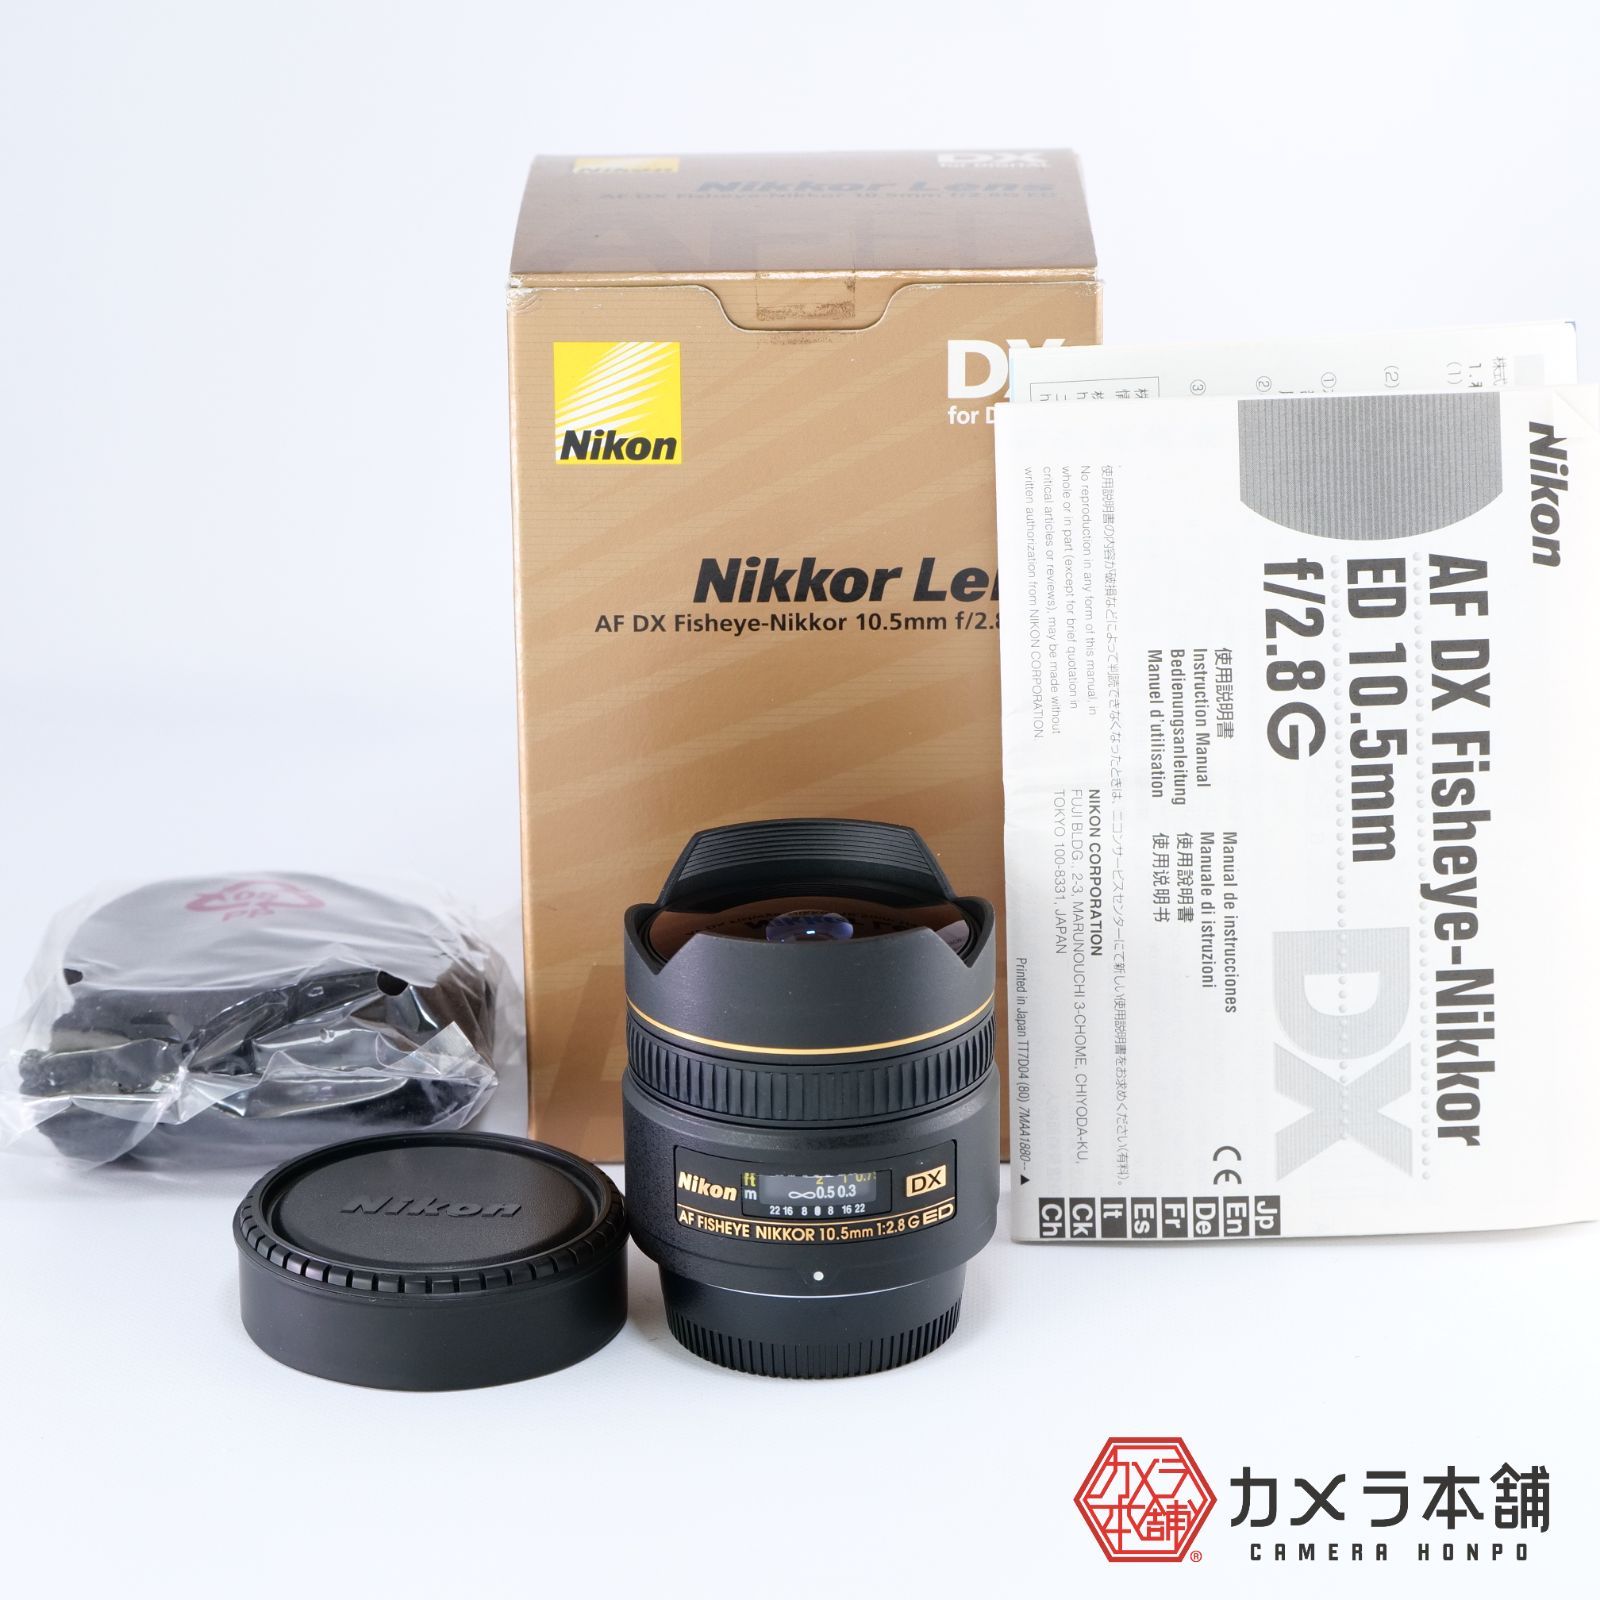 ニコン Nikon AF DX Fisheye-Nikkor 10.5mm f2.8G ED 魚眼レンズ 一眼